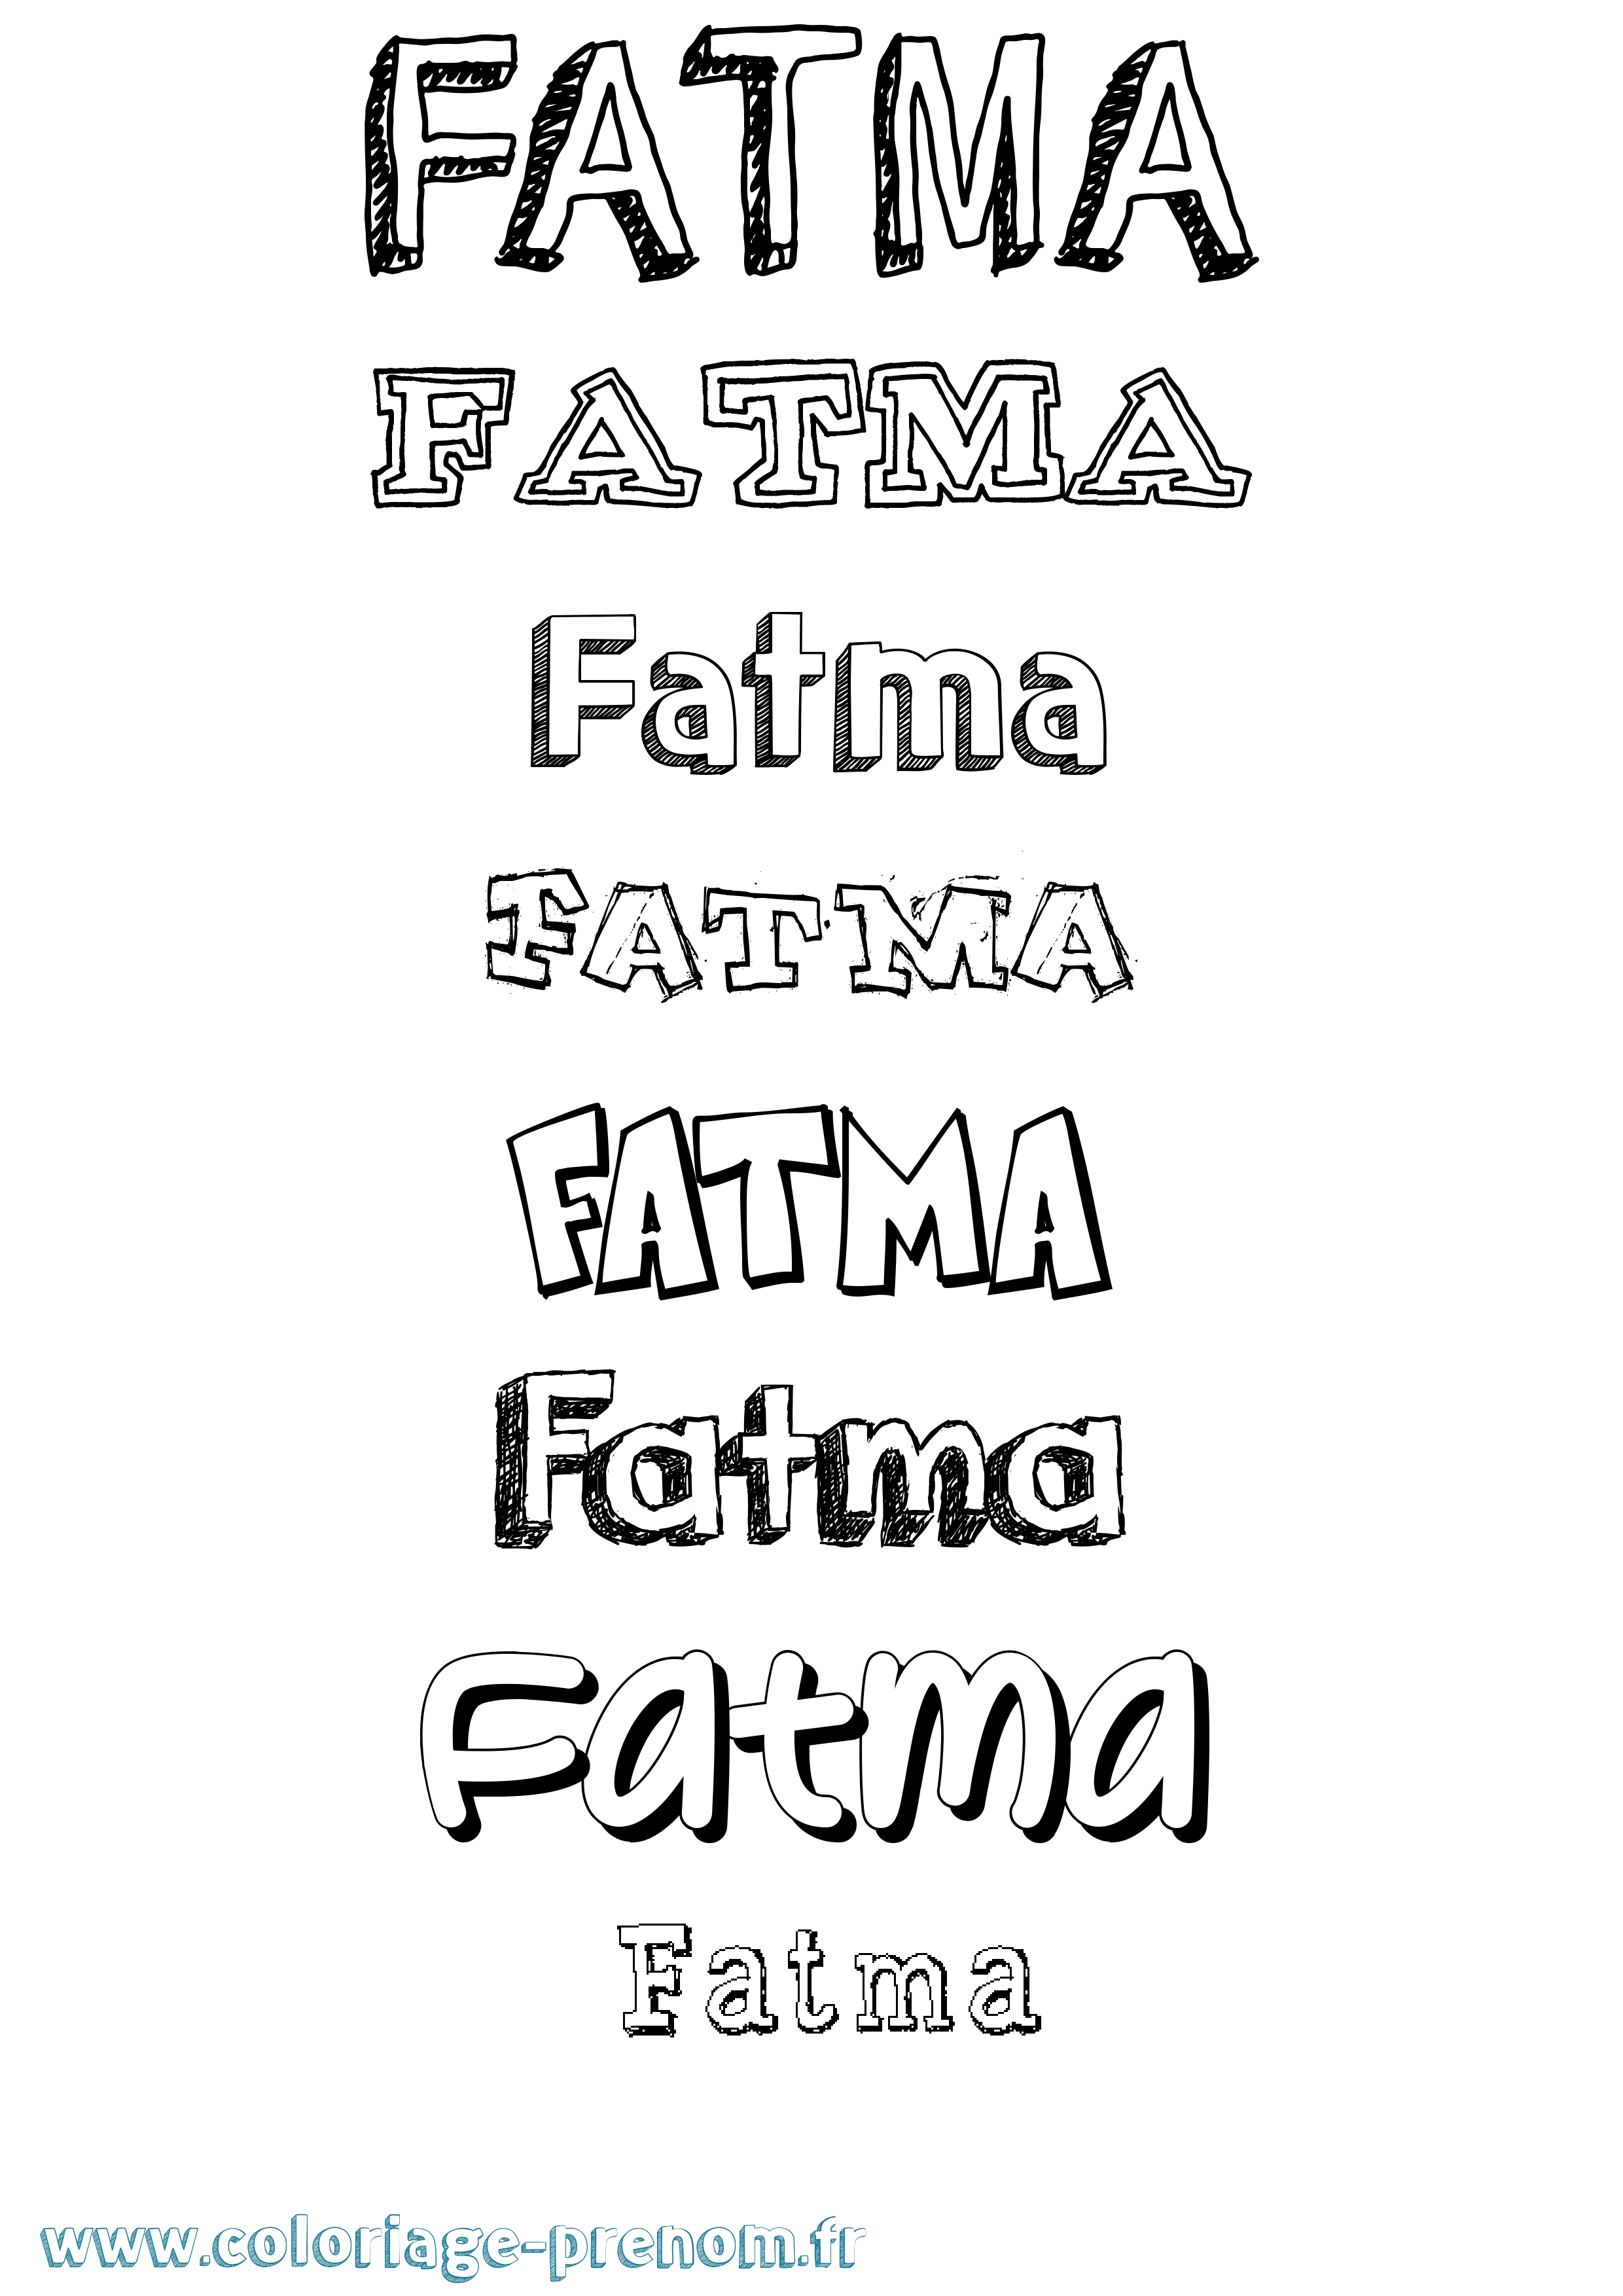 Coloriage prénom Fatma